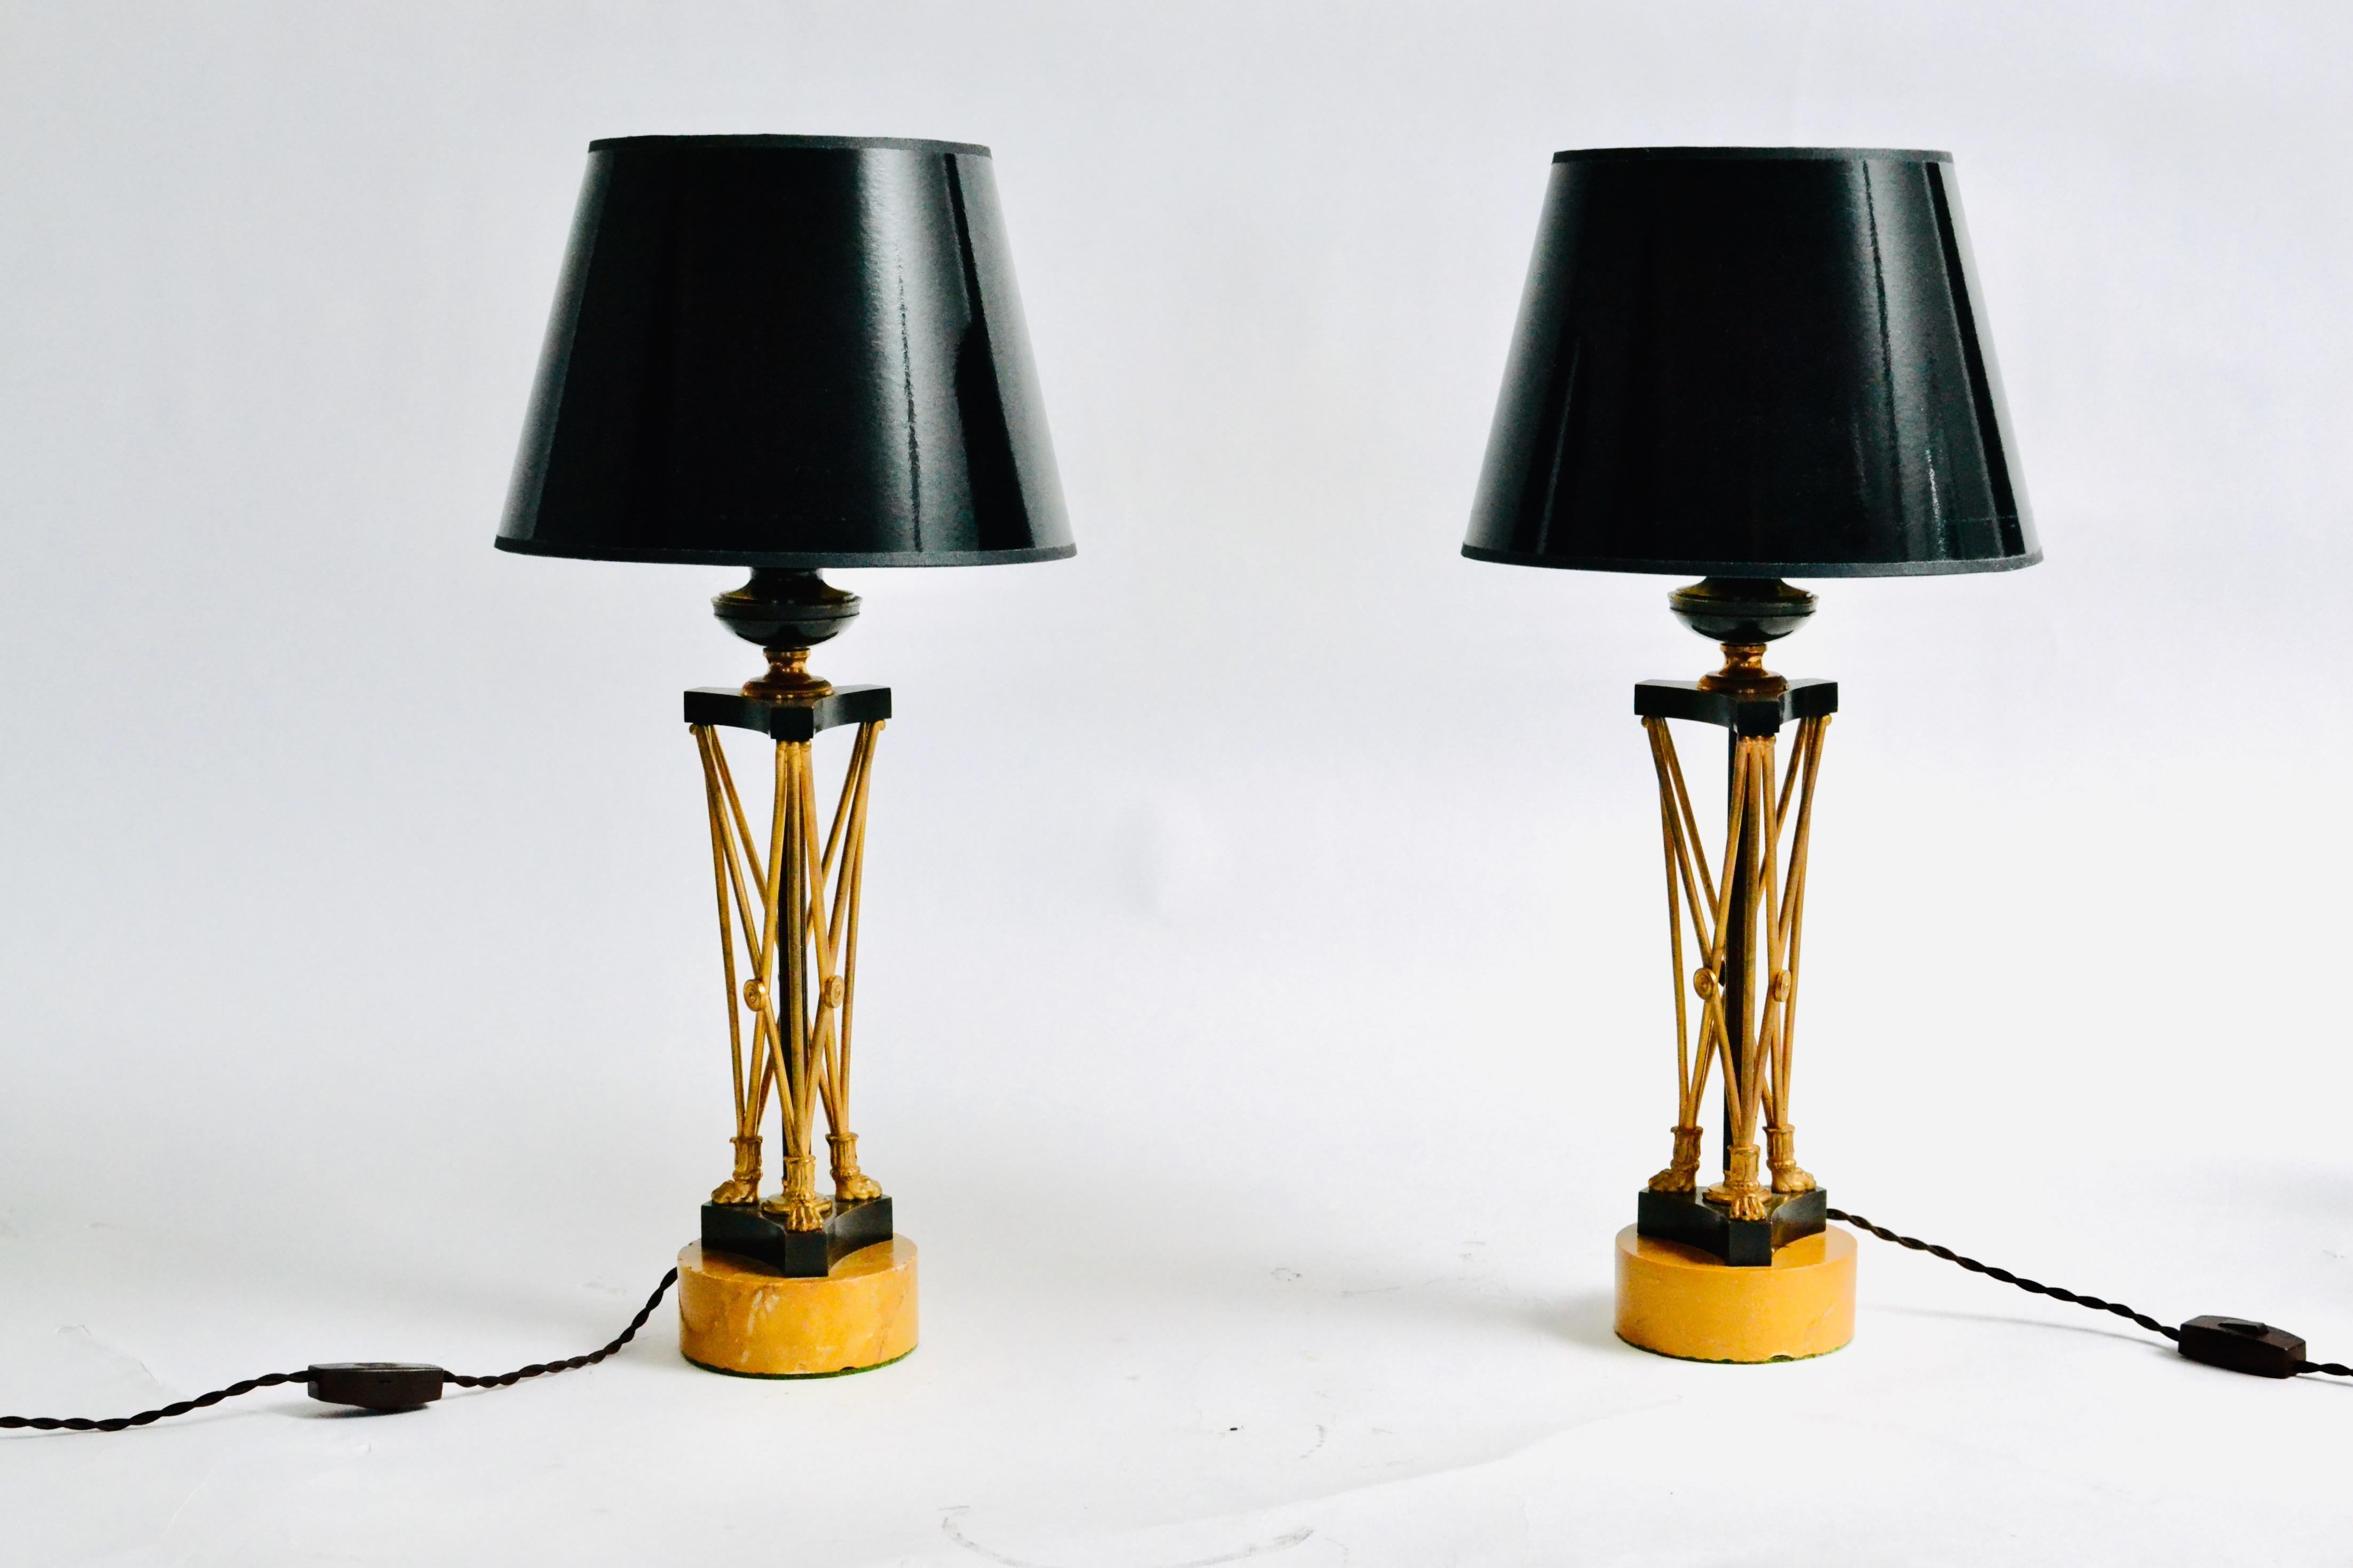 Ein Paar vergoldete und patinierte Regency-Bronze-Leuchter, jetzt als Lampen auf runden Siena-Marmorsockeln montiert, frühes 19. Jahrhundert. Ungewöhnliches Modell. 

Die Regency-Ära der britischen Geschichte erstreckte sich offiziell auf die Jahre